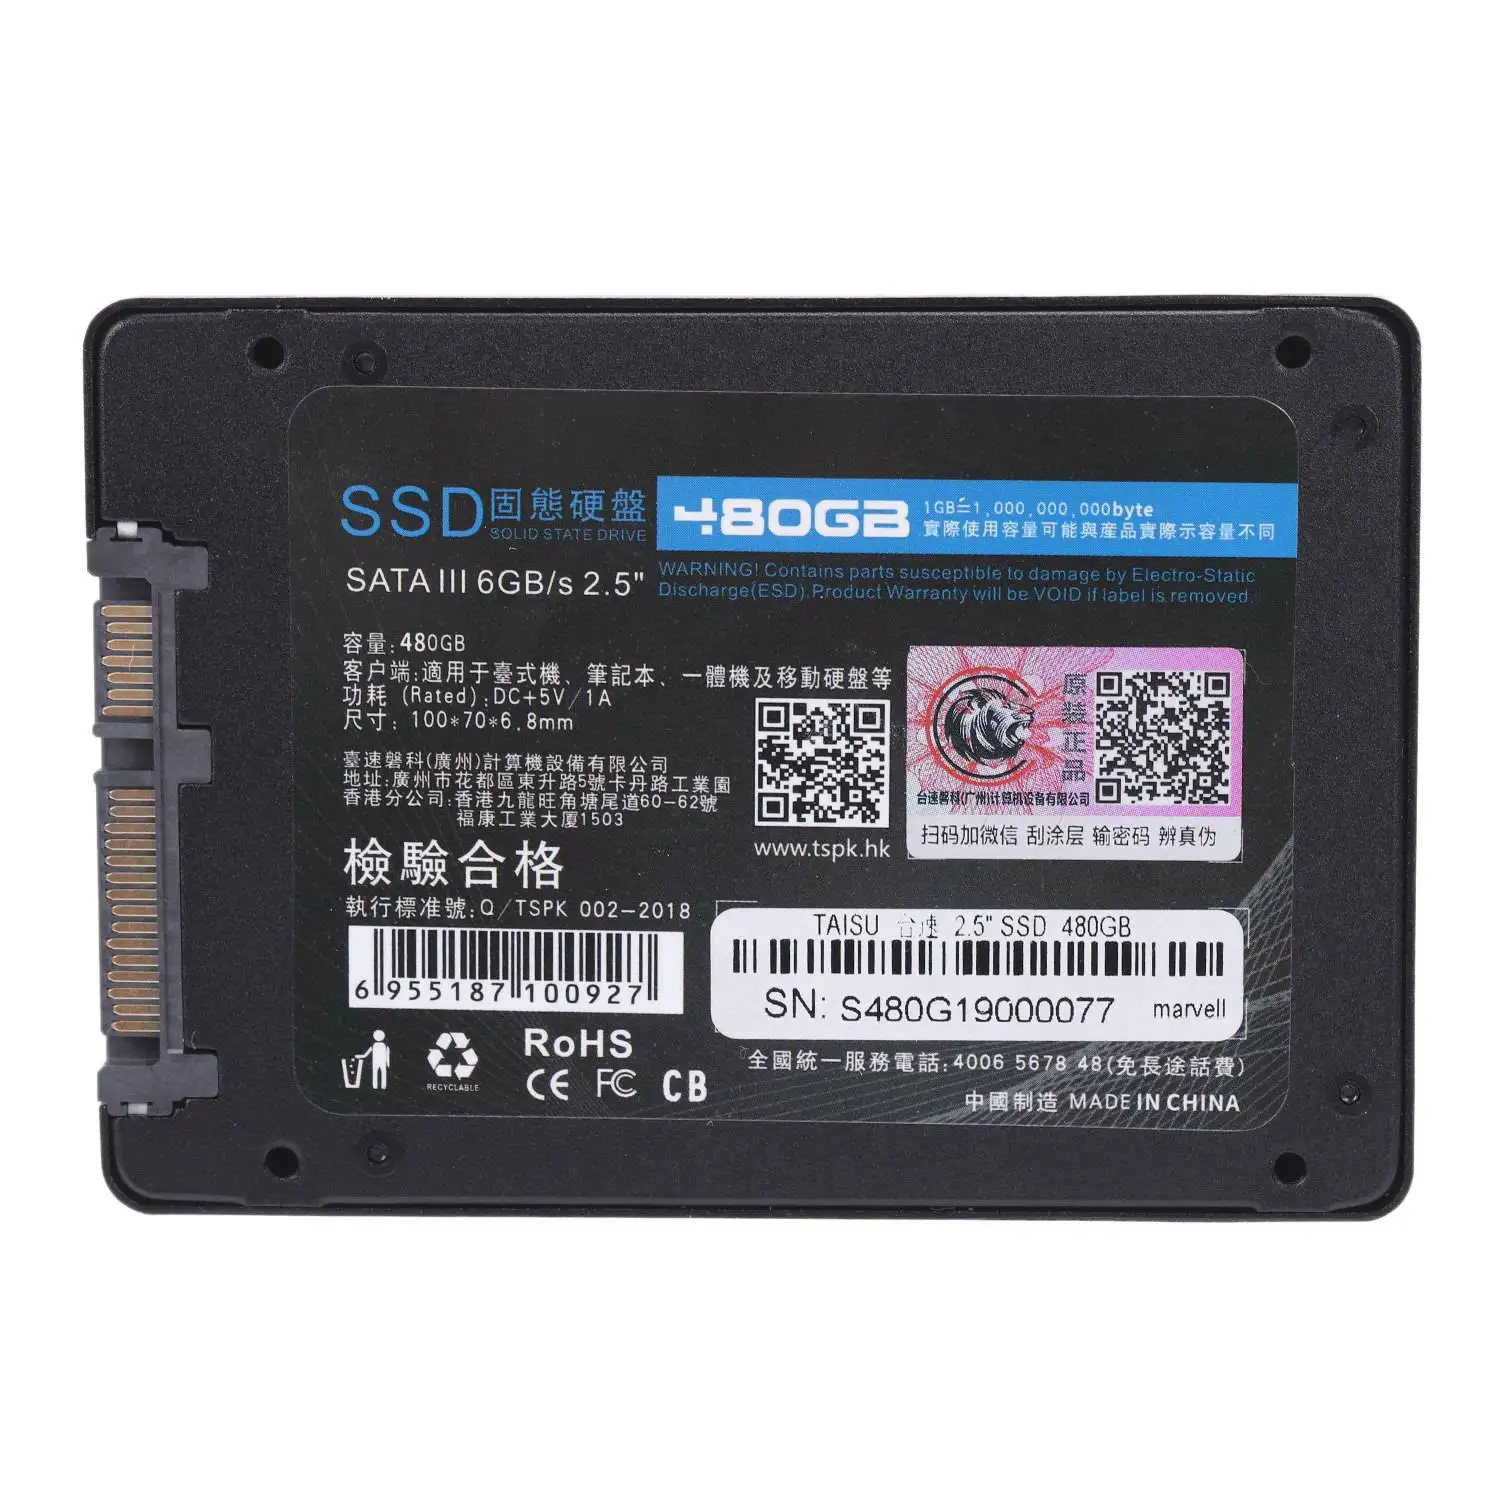 TAISU Internal Solid State Drive SATA3 2,5 Inch HDD жесткий диск 2,5 дюйма HD SSD построить в Marvell обновления чип для рабочего ноутбука